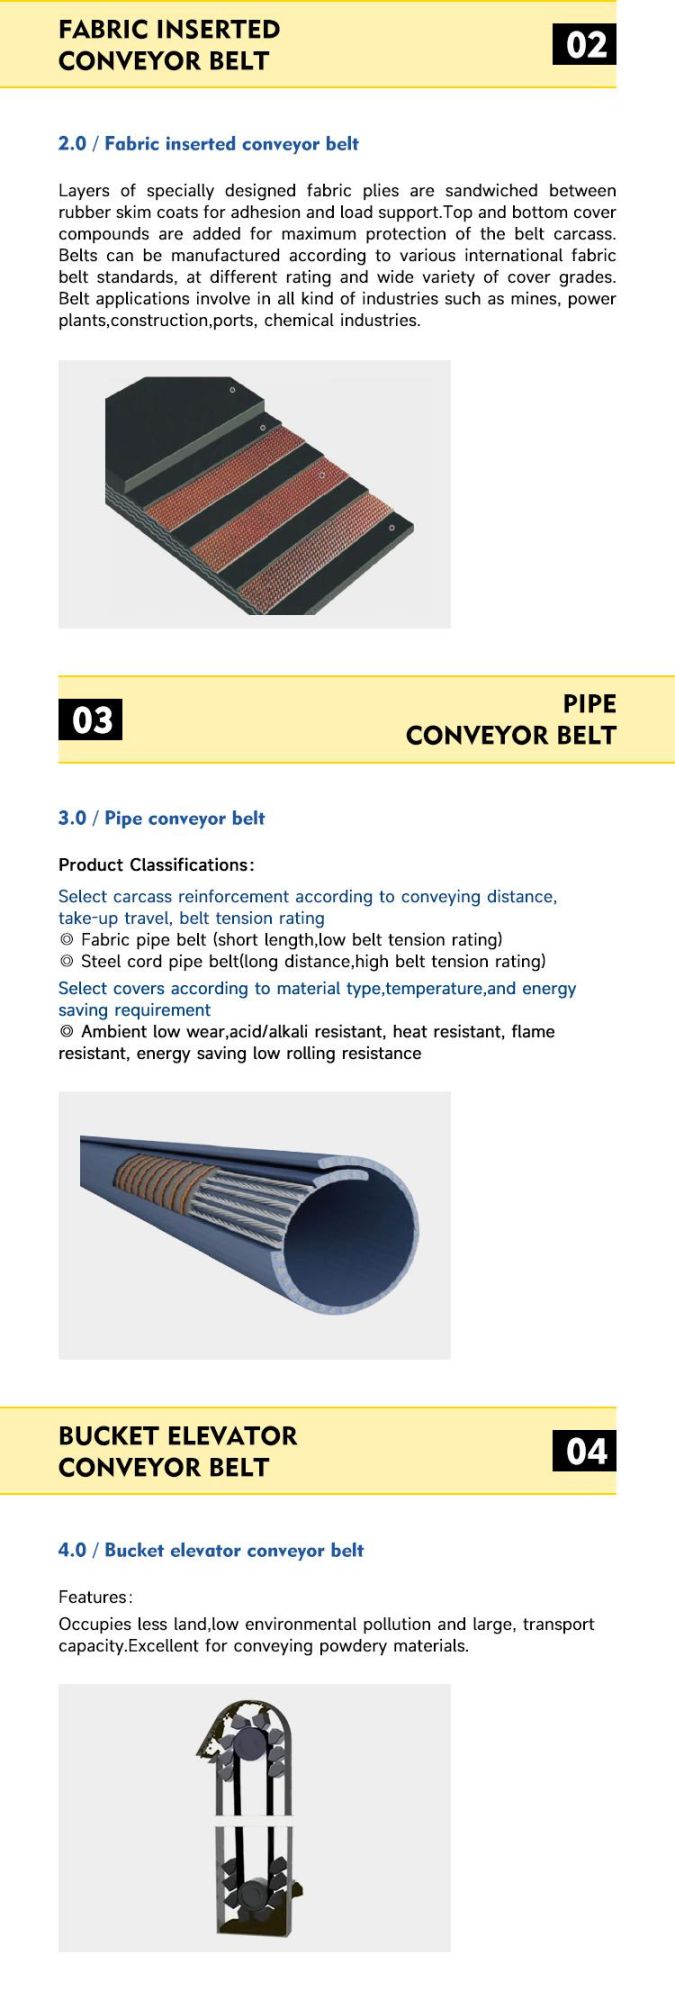 Heat Resistant Conveyor Belt Supplier for Minerals & Mining Industry